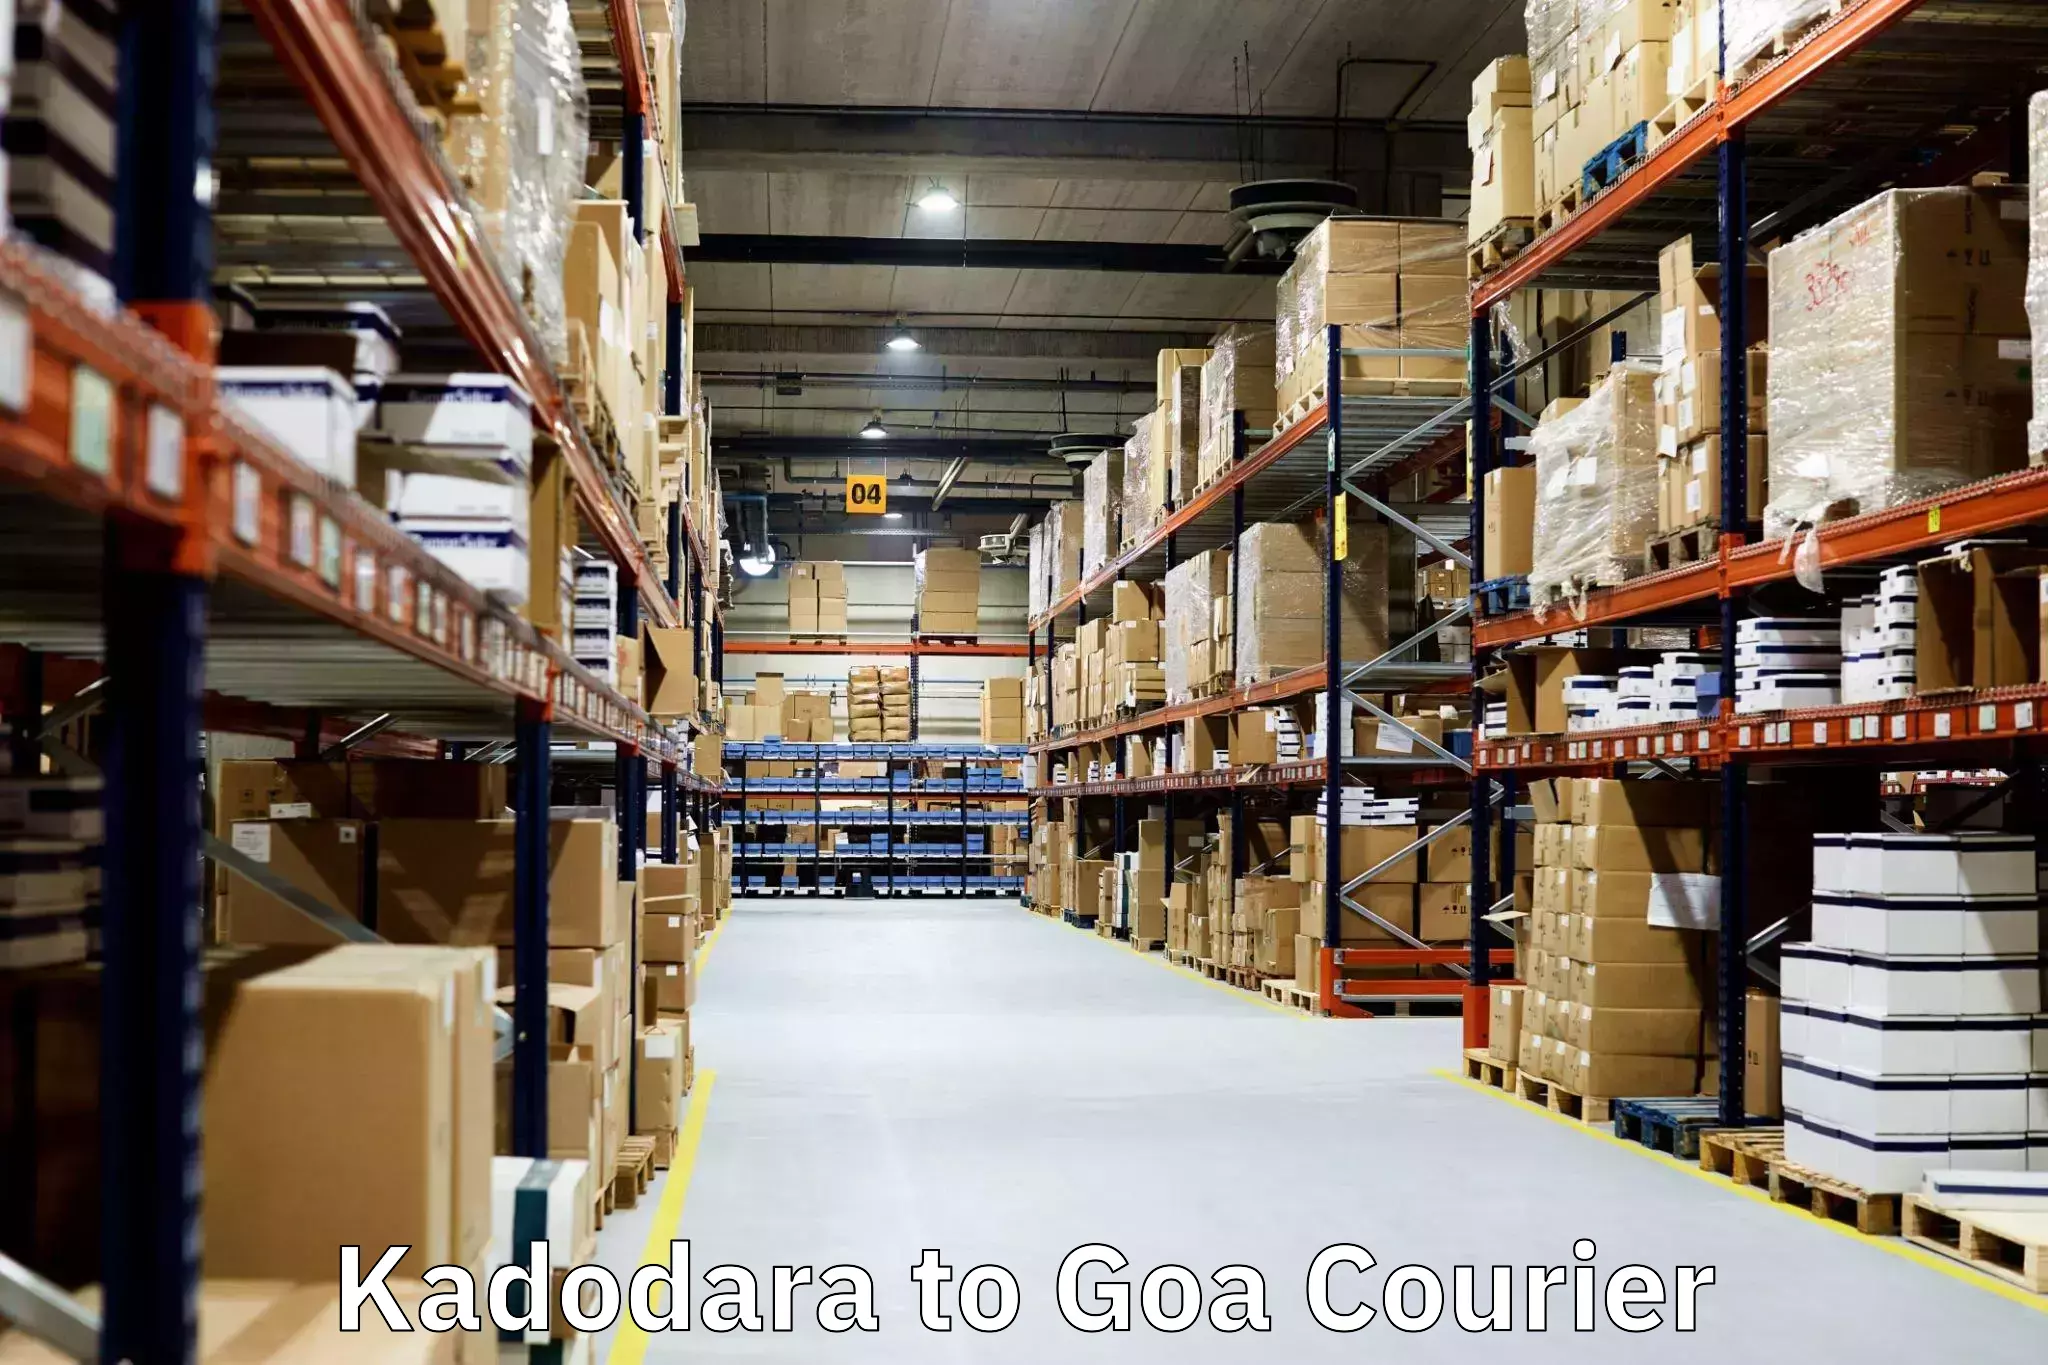 Moving and storage services Kadodara to Goa